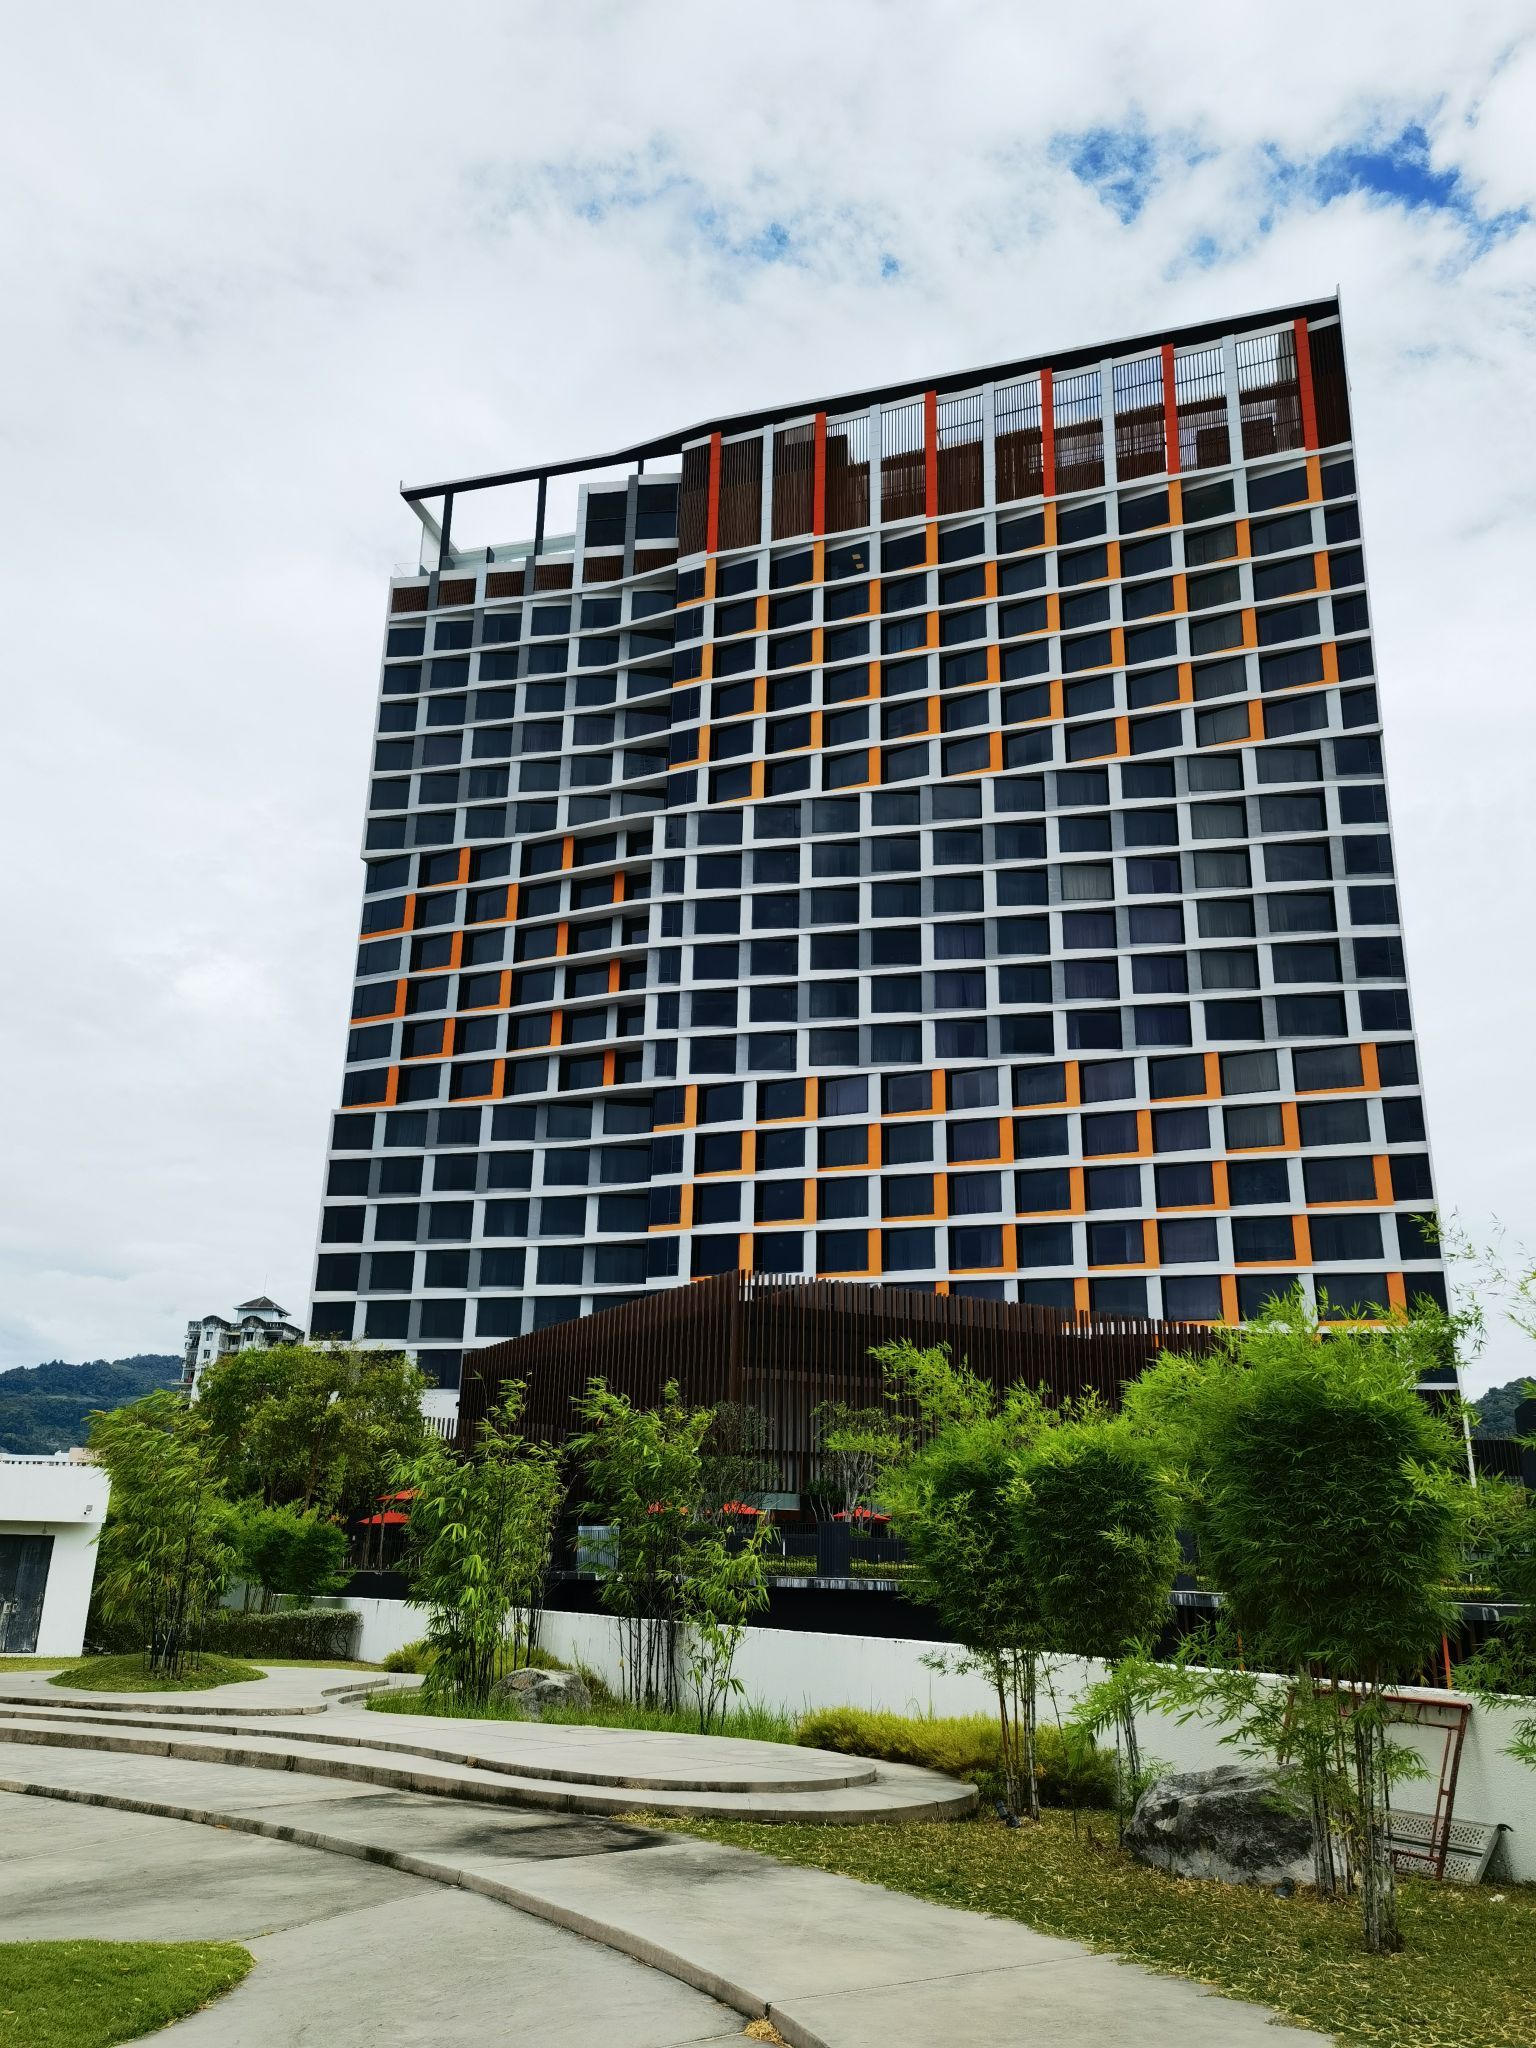 酒店离机场很近，因为广州飞槟城很晚了最好的方式就是找一家性价比高的离机场近的五星级酒店住下来休息了。